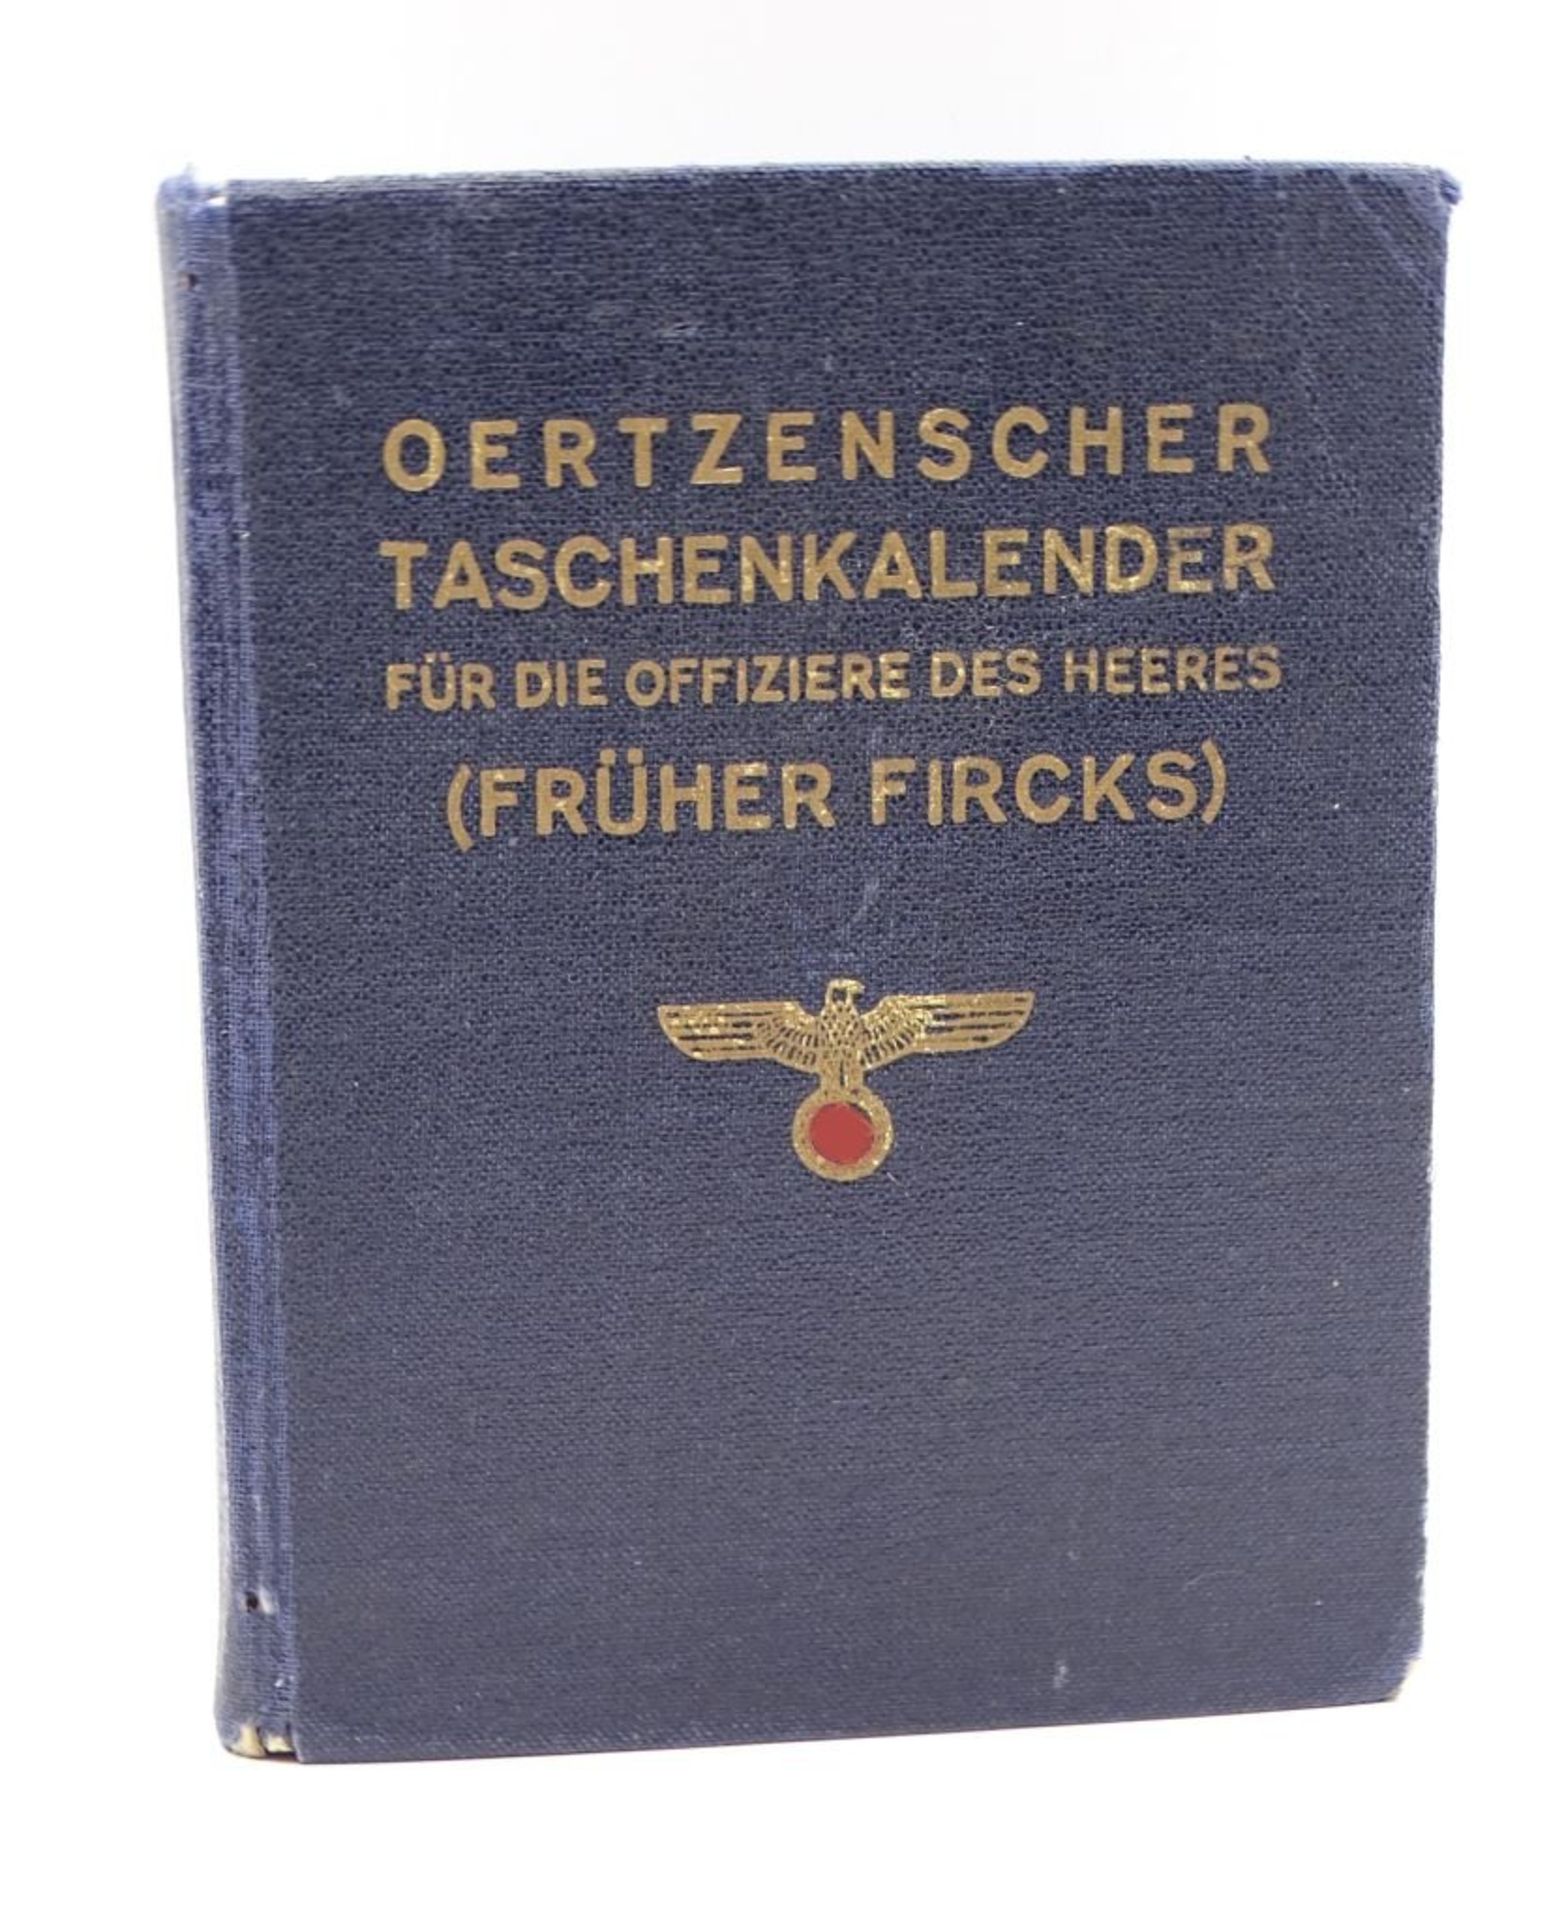 Taschenkalender für die Offiziere des Heeres (Früher Fircks),blaue Ausgabe,61. Jahrgang, 19- - -22.